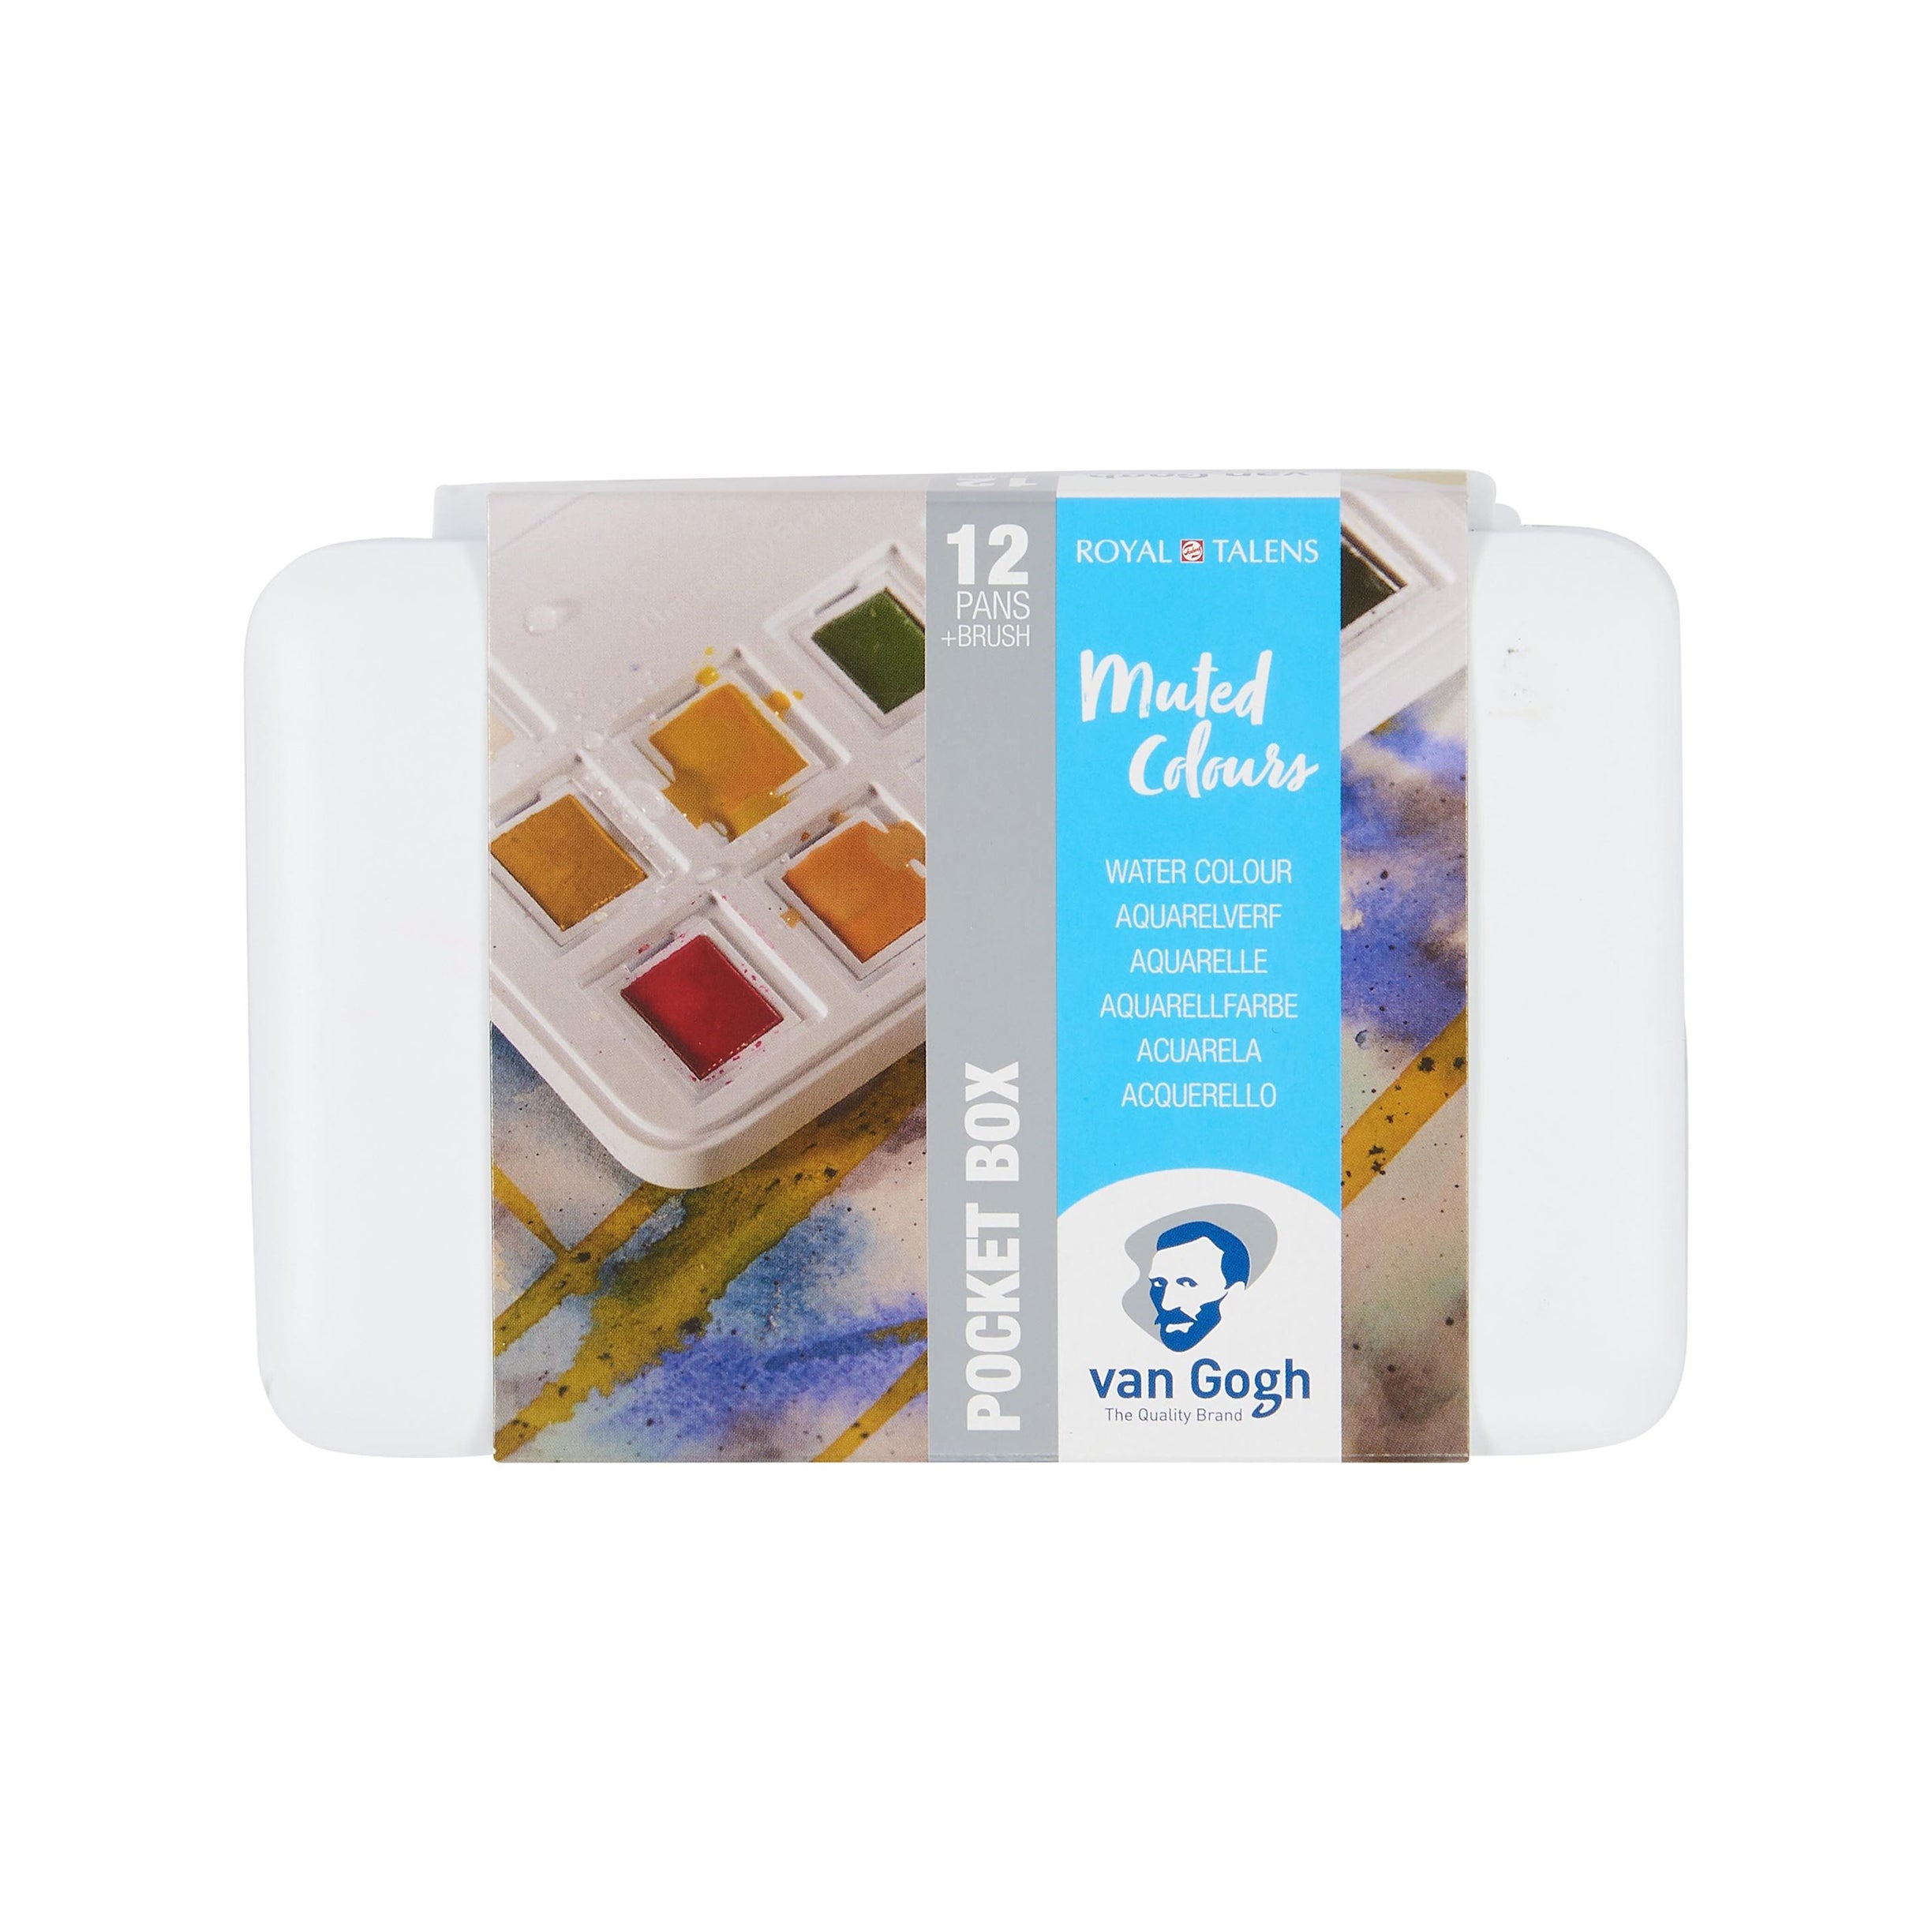 Royal Talens Van Gogh Watercolor Pocket Box Set